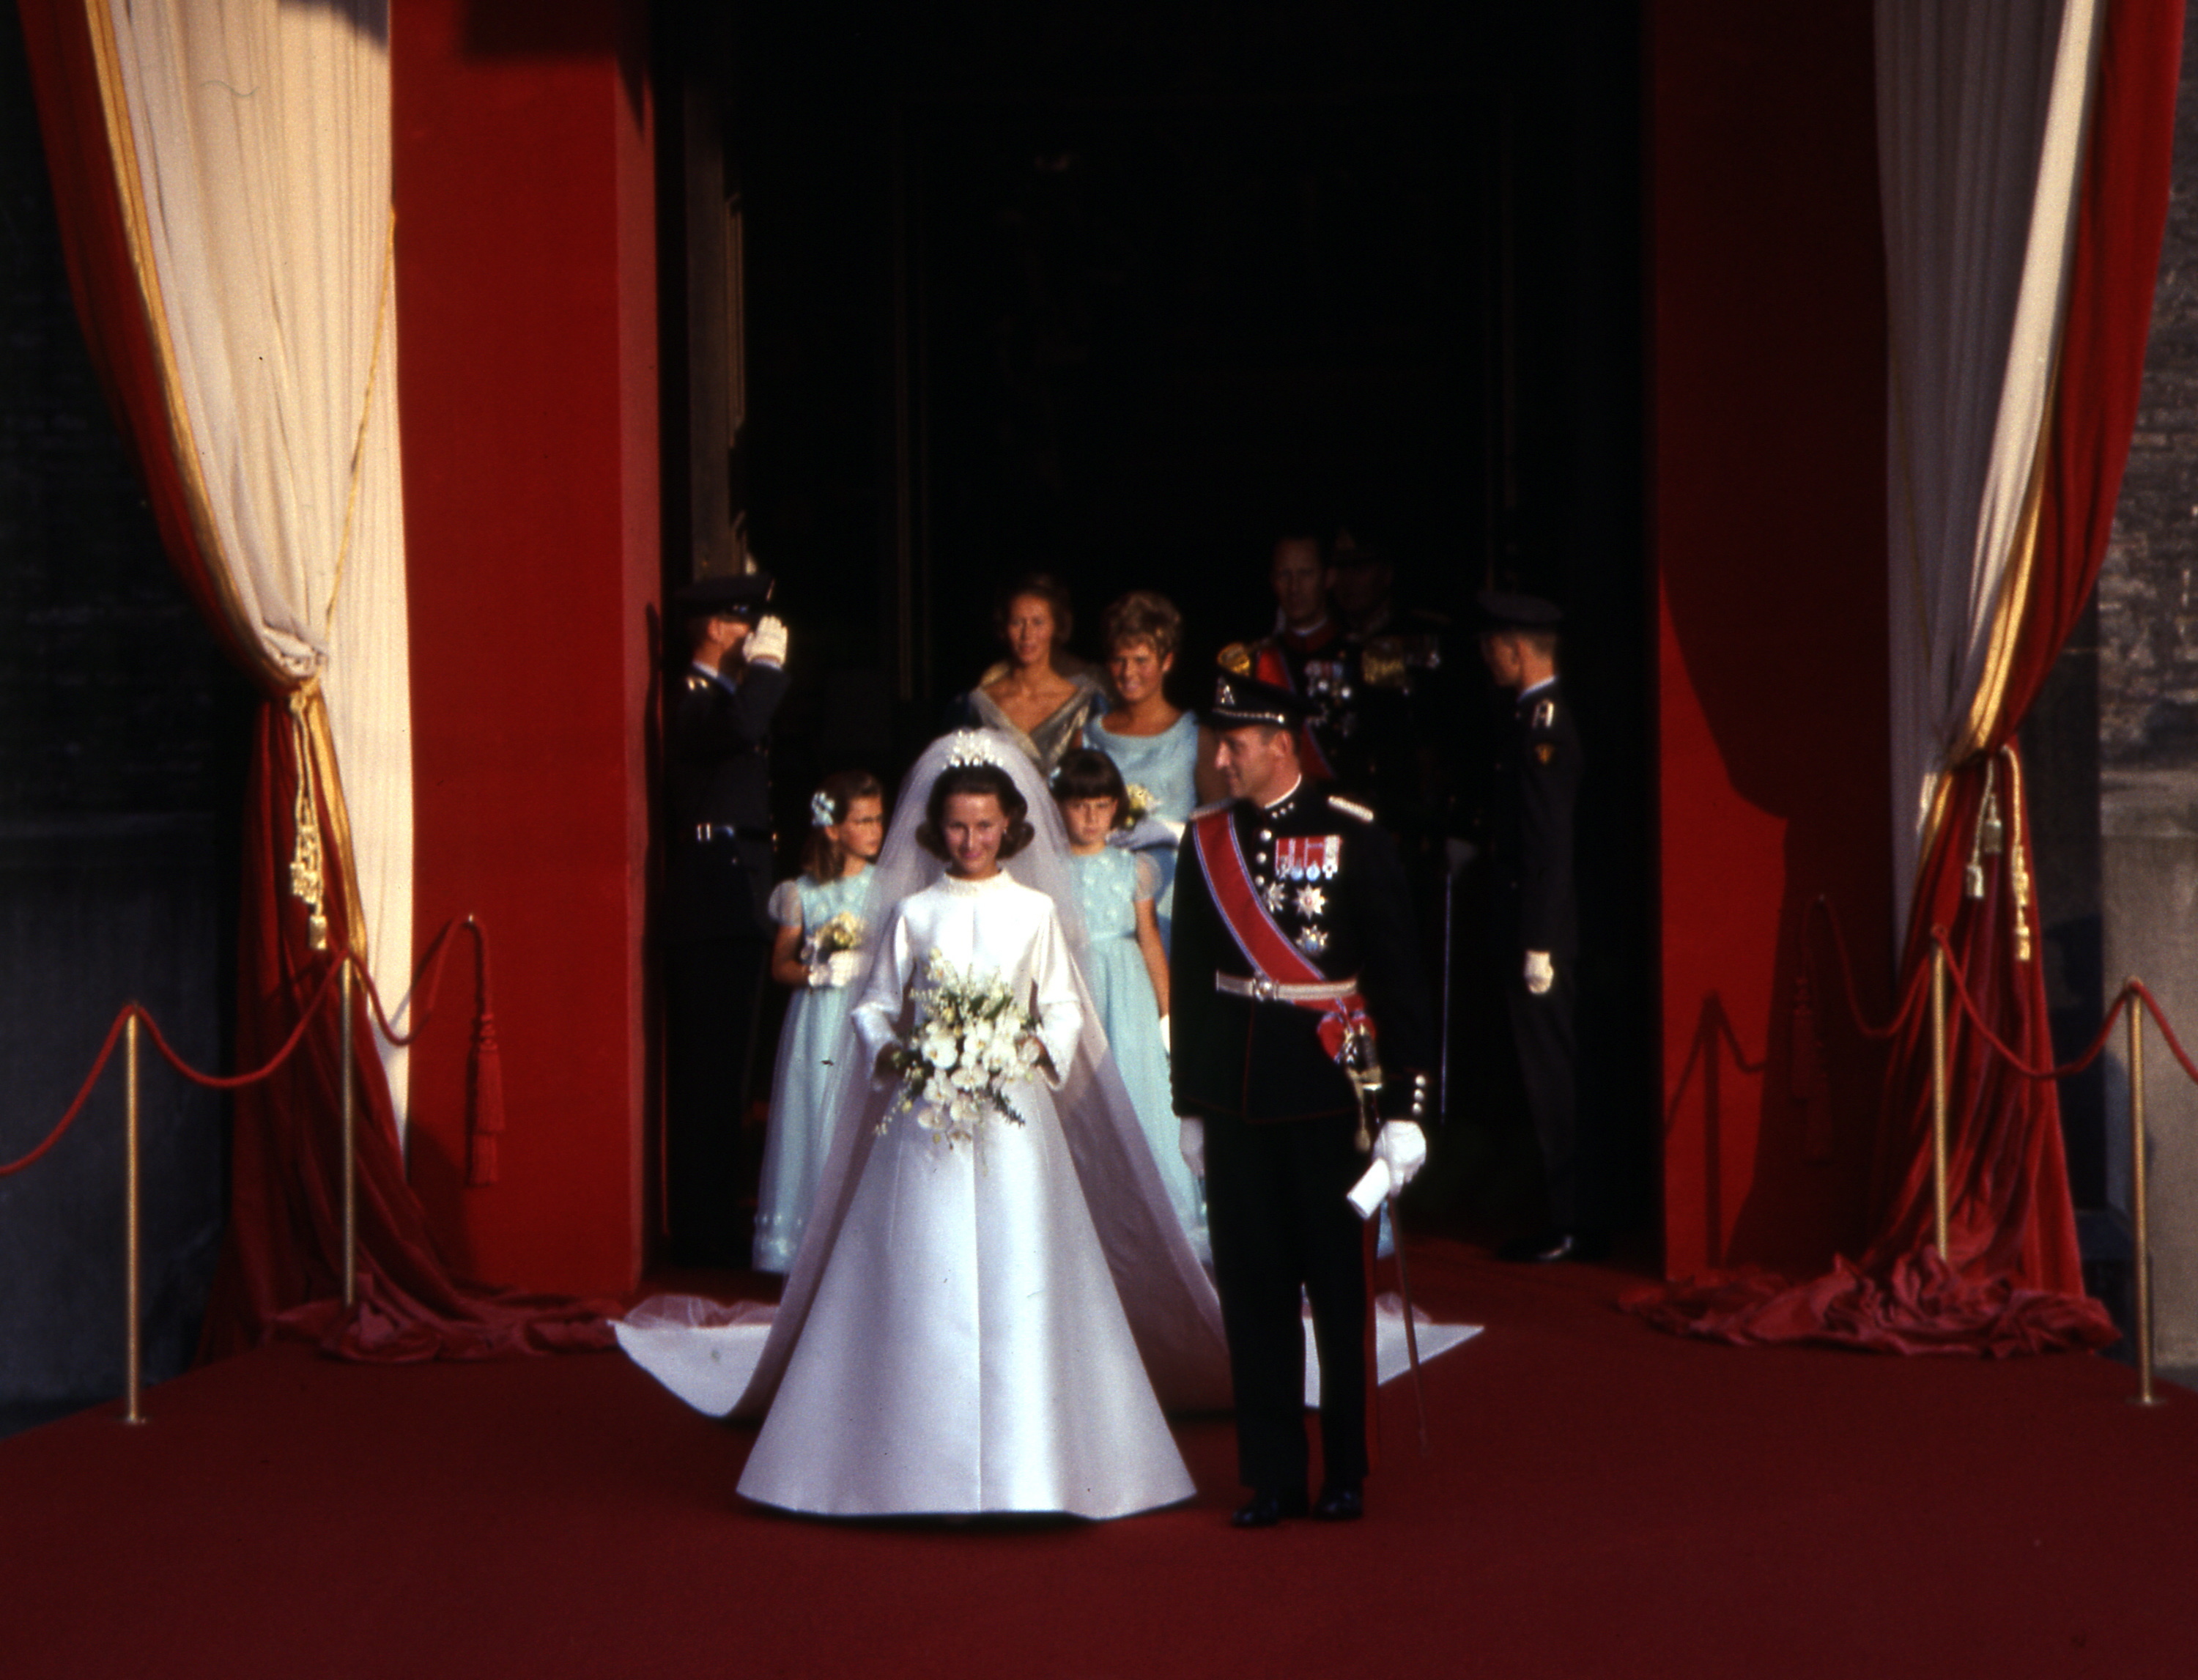 La boda de Harald y Sonia, en 1968.